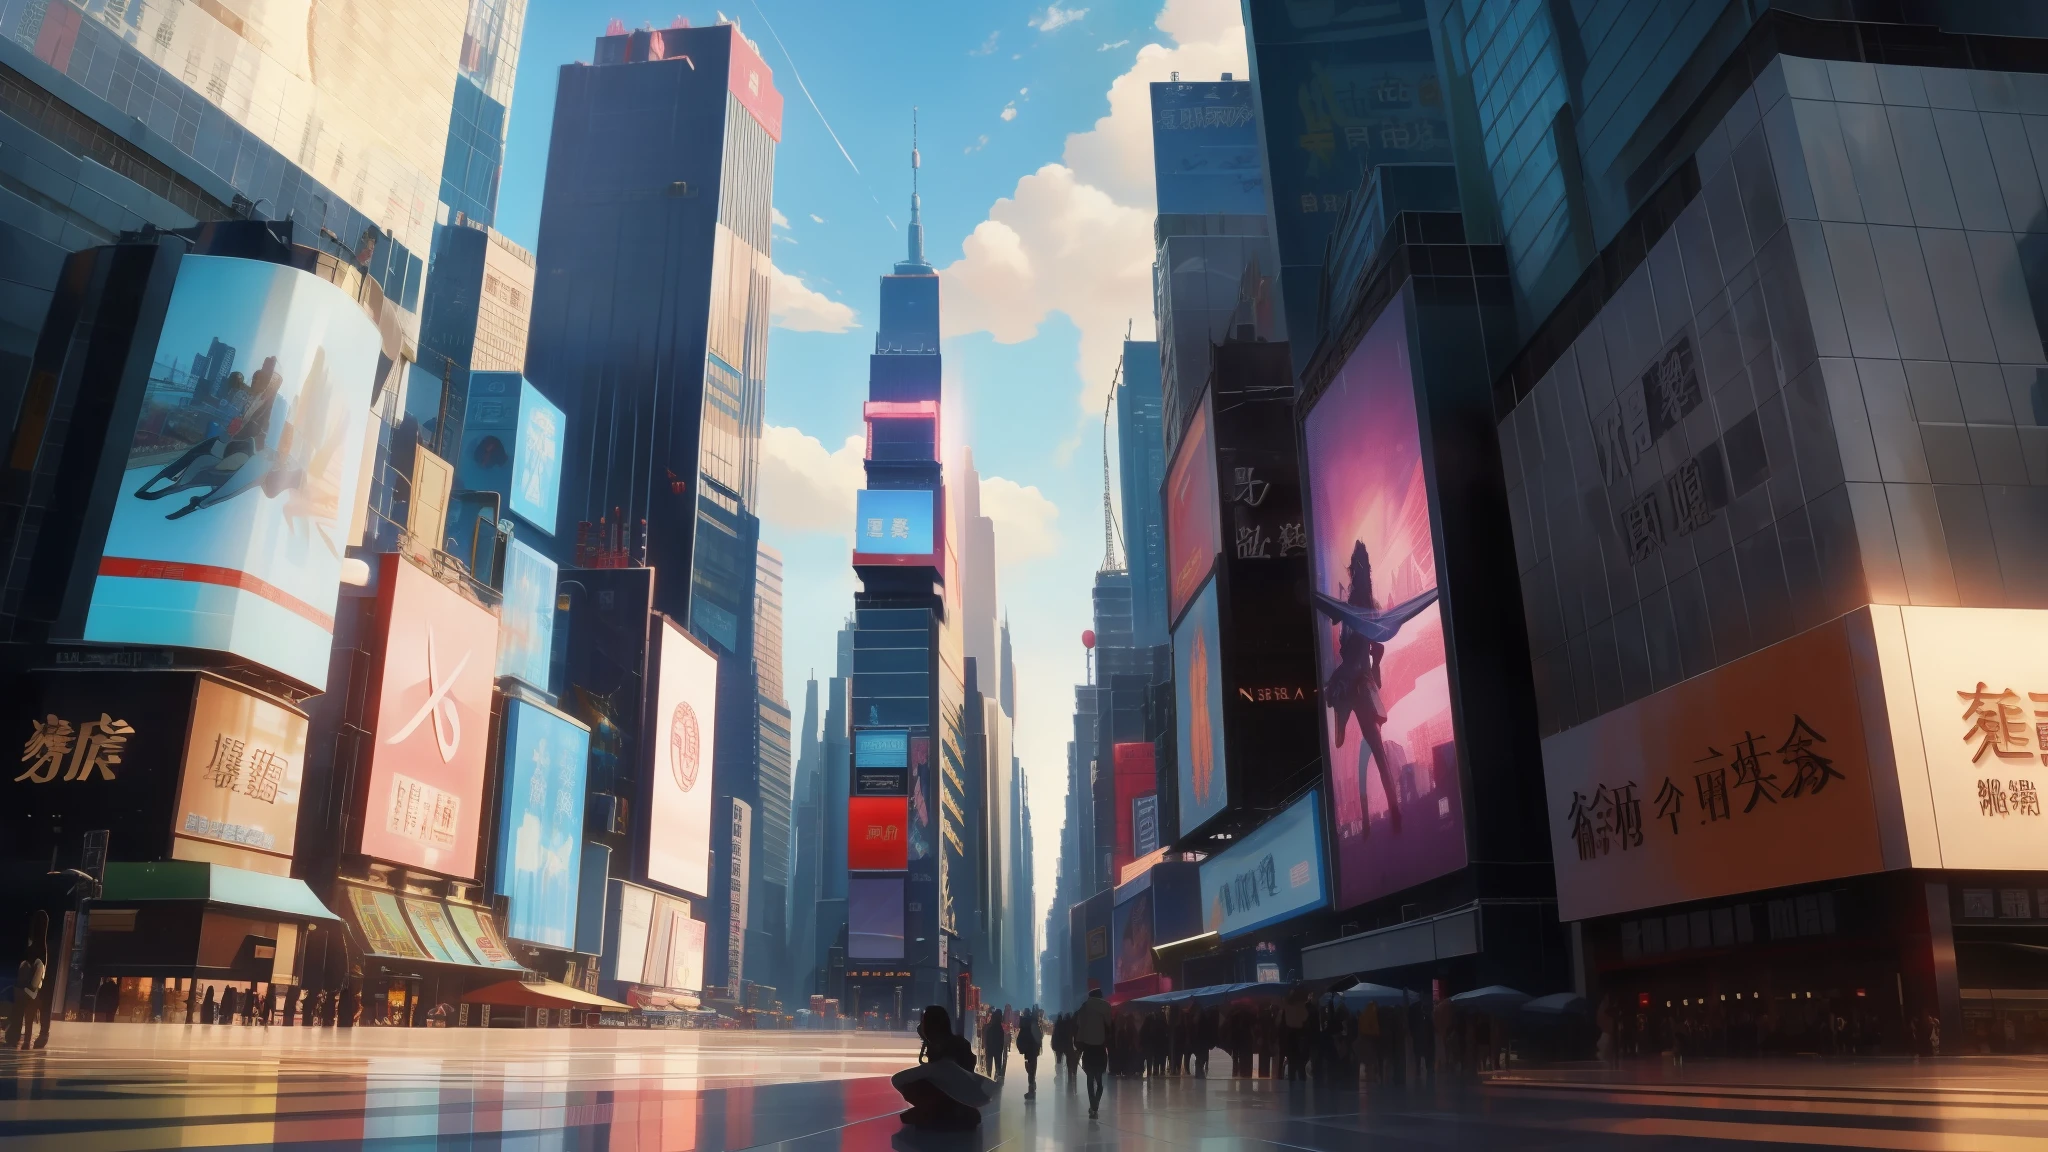 Cena de animação da Times Square em Nova York sob o céu azul com nuvens brancas,sem humanos，丰富的detalhe刻画，许多detalhe，detalhe，CG，detalhe图， Animação desenhada por Xin Haicheng, Tópicos importantes no pixiv, realismo mágico, linda cena de anime, por Xin Haicheng, ( ( Xin Haicheng ) ), por Xin Haicheng, arte de fundo de anime, estilo de Xin Haicheng